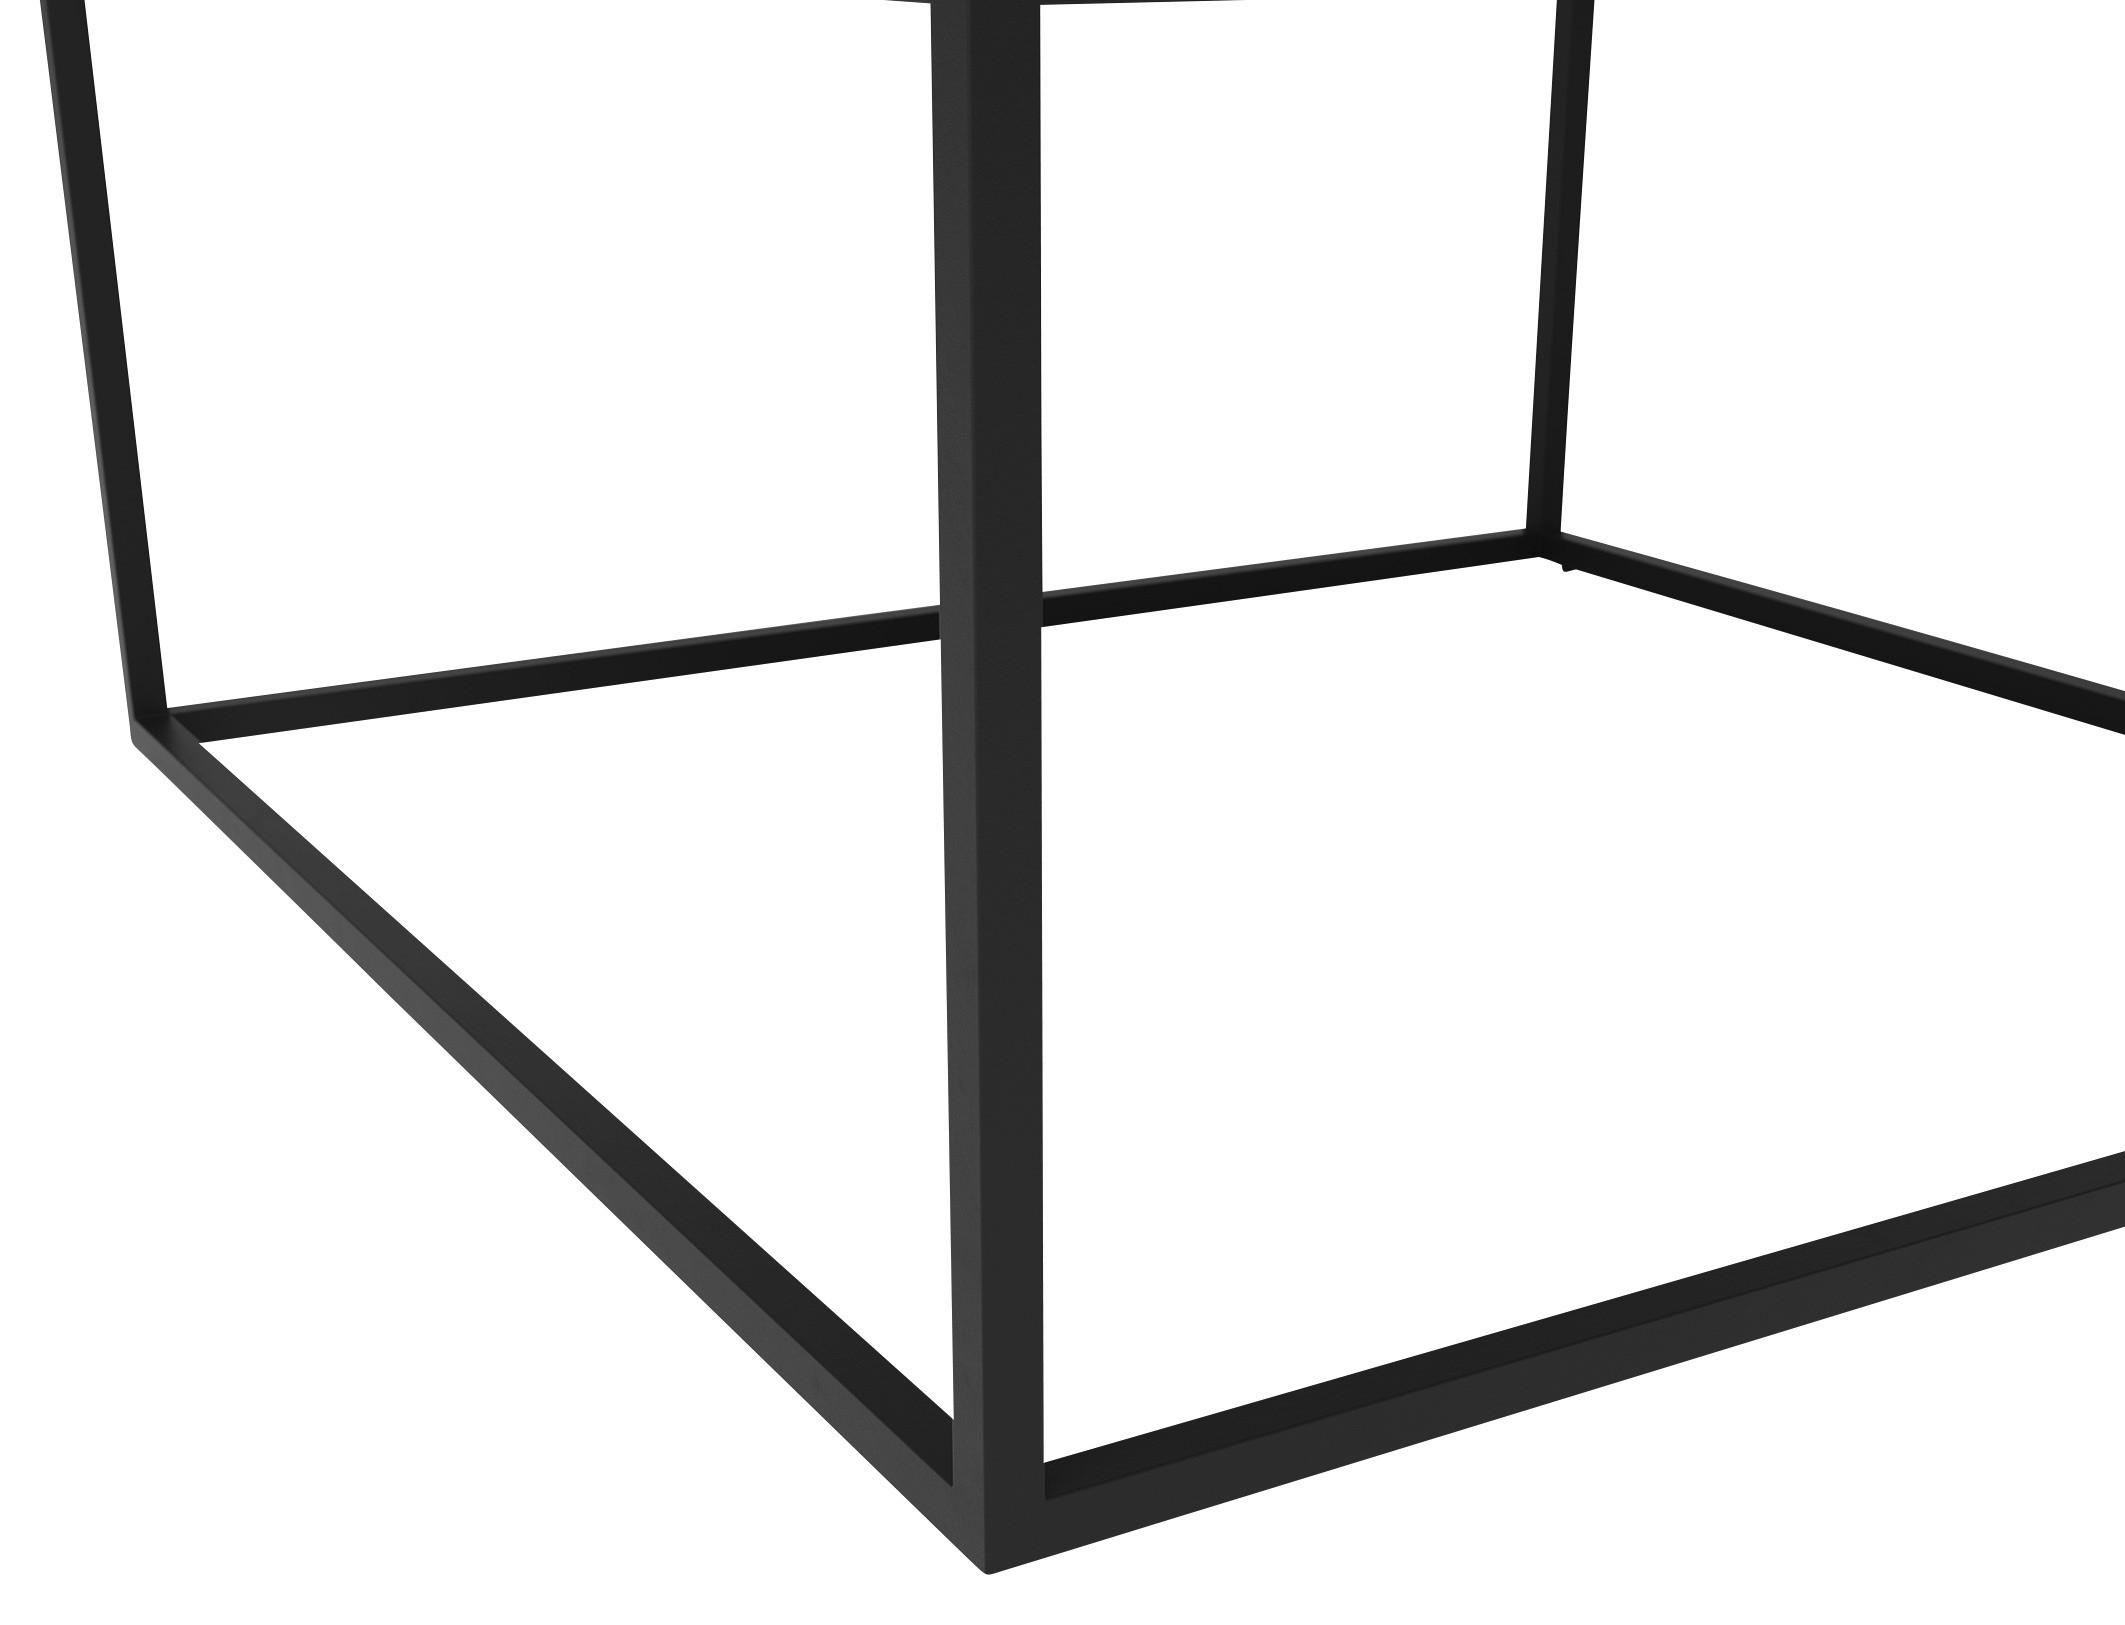 COUCHTISCH quadratisch Grau, Schwarz  - Schwarz/Grau, Design, Glas/Metall (75/75/45cm) - Joop!